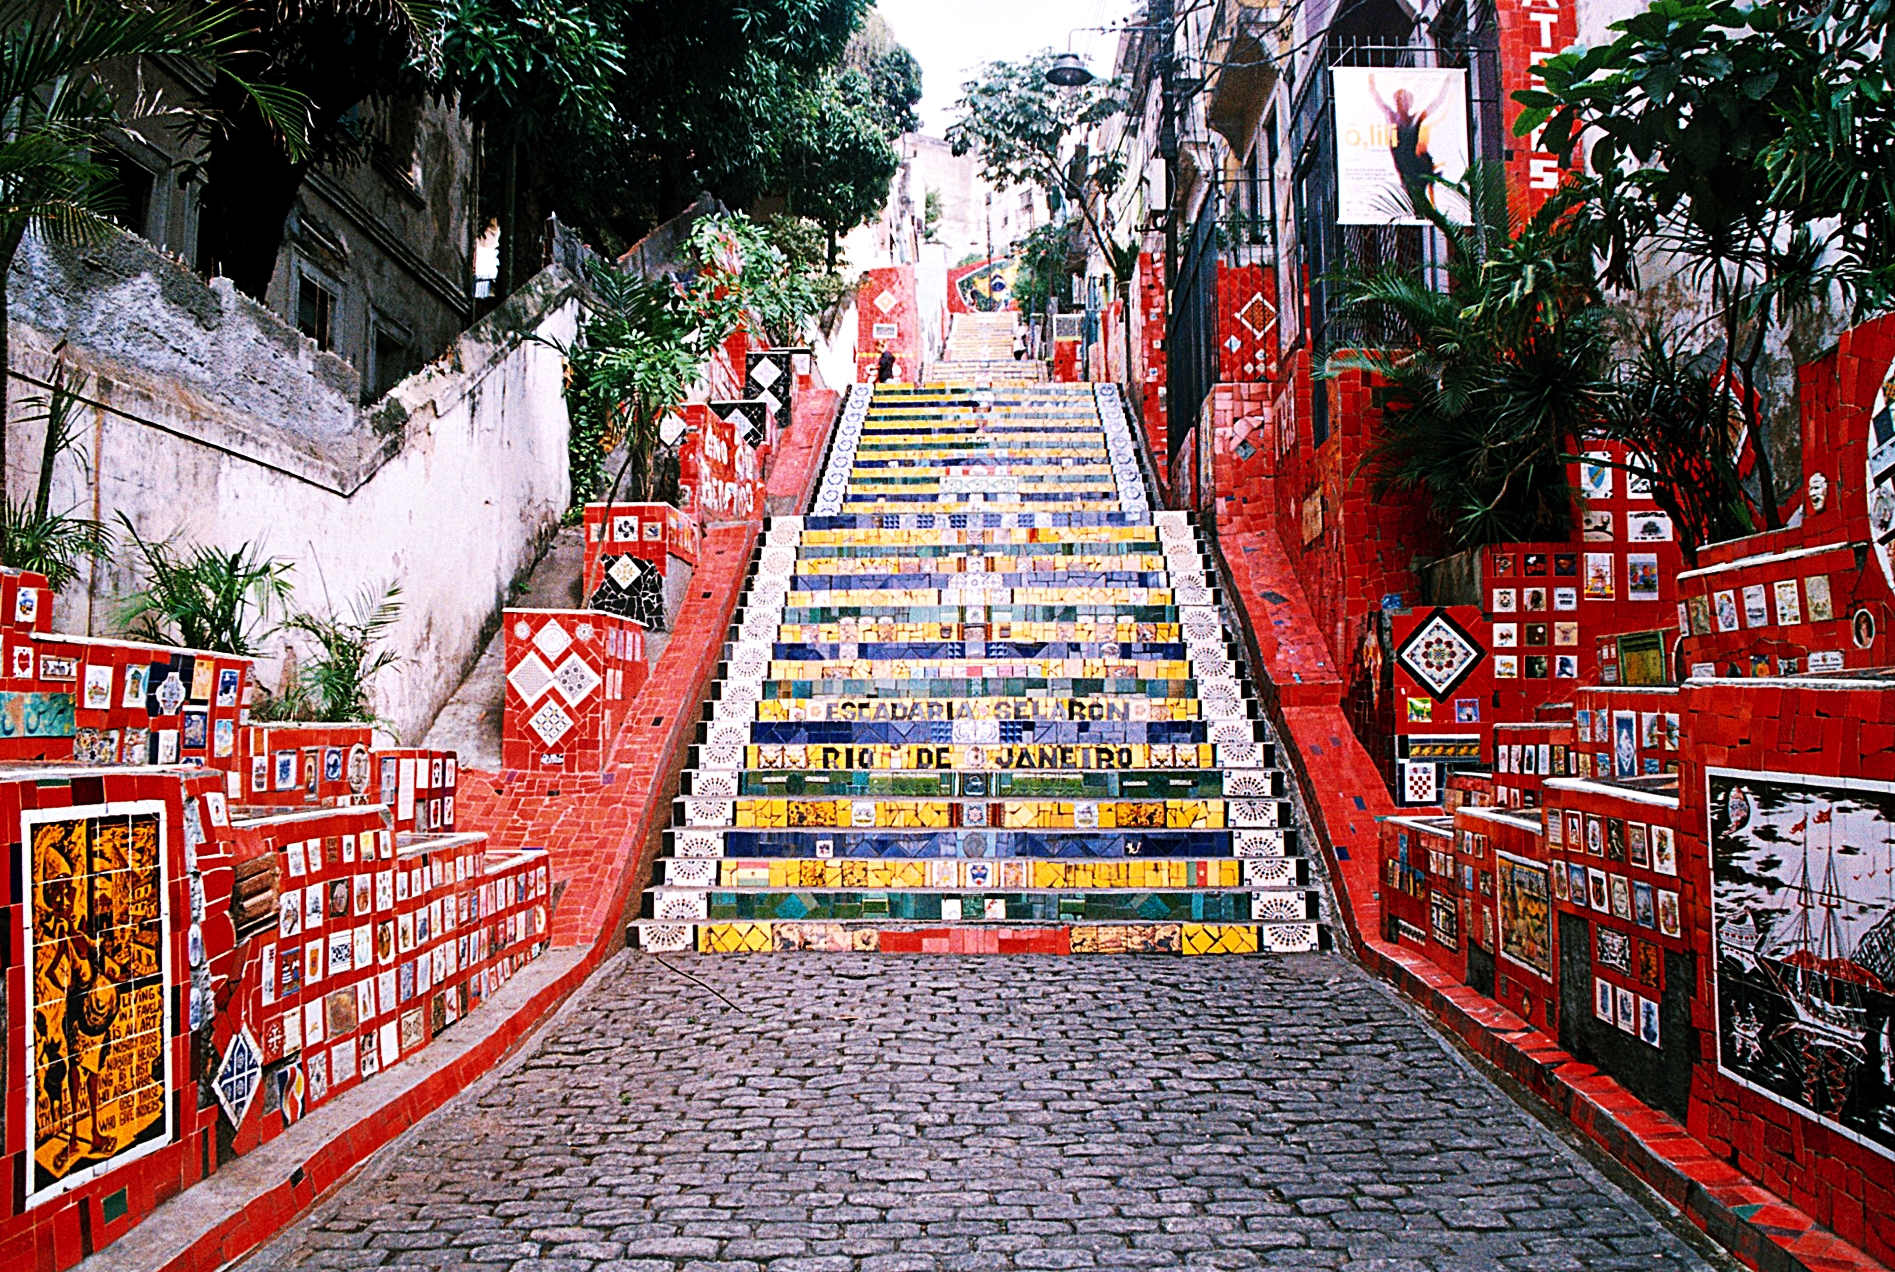 Escada recoberta por azulejos de cores variadas